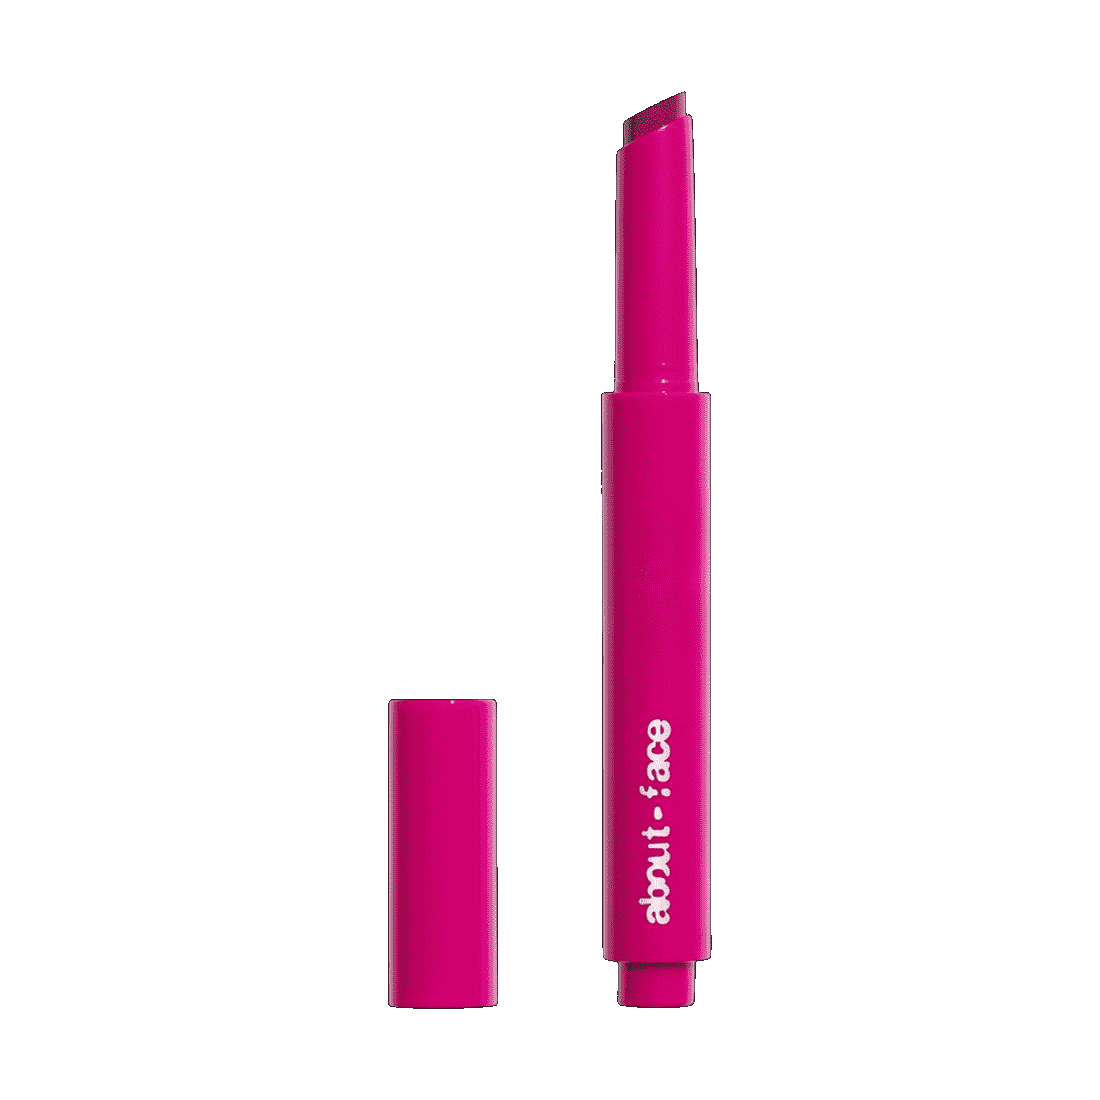 About-Face Lip Colour Butter Pinkfarbener Lippenbutterstift mit seitlichem Deckel auf weißem Hintergrund